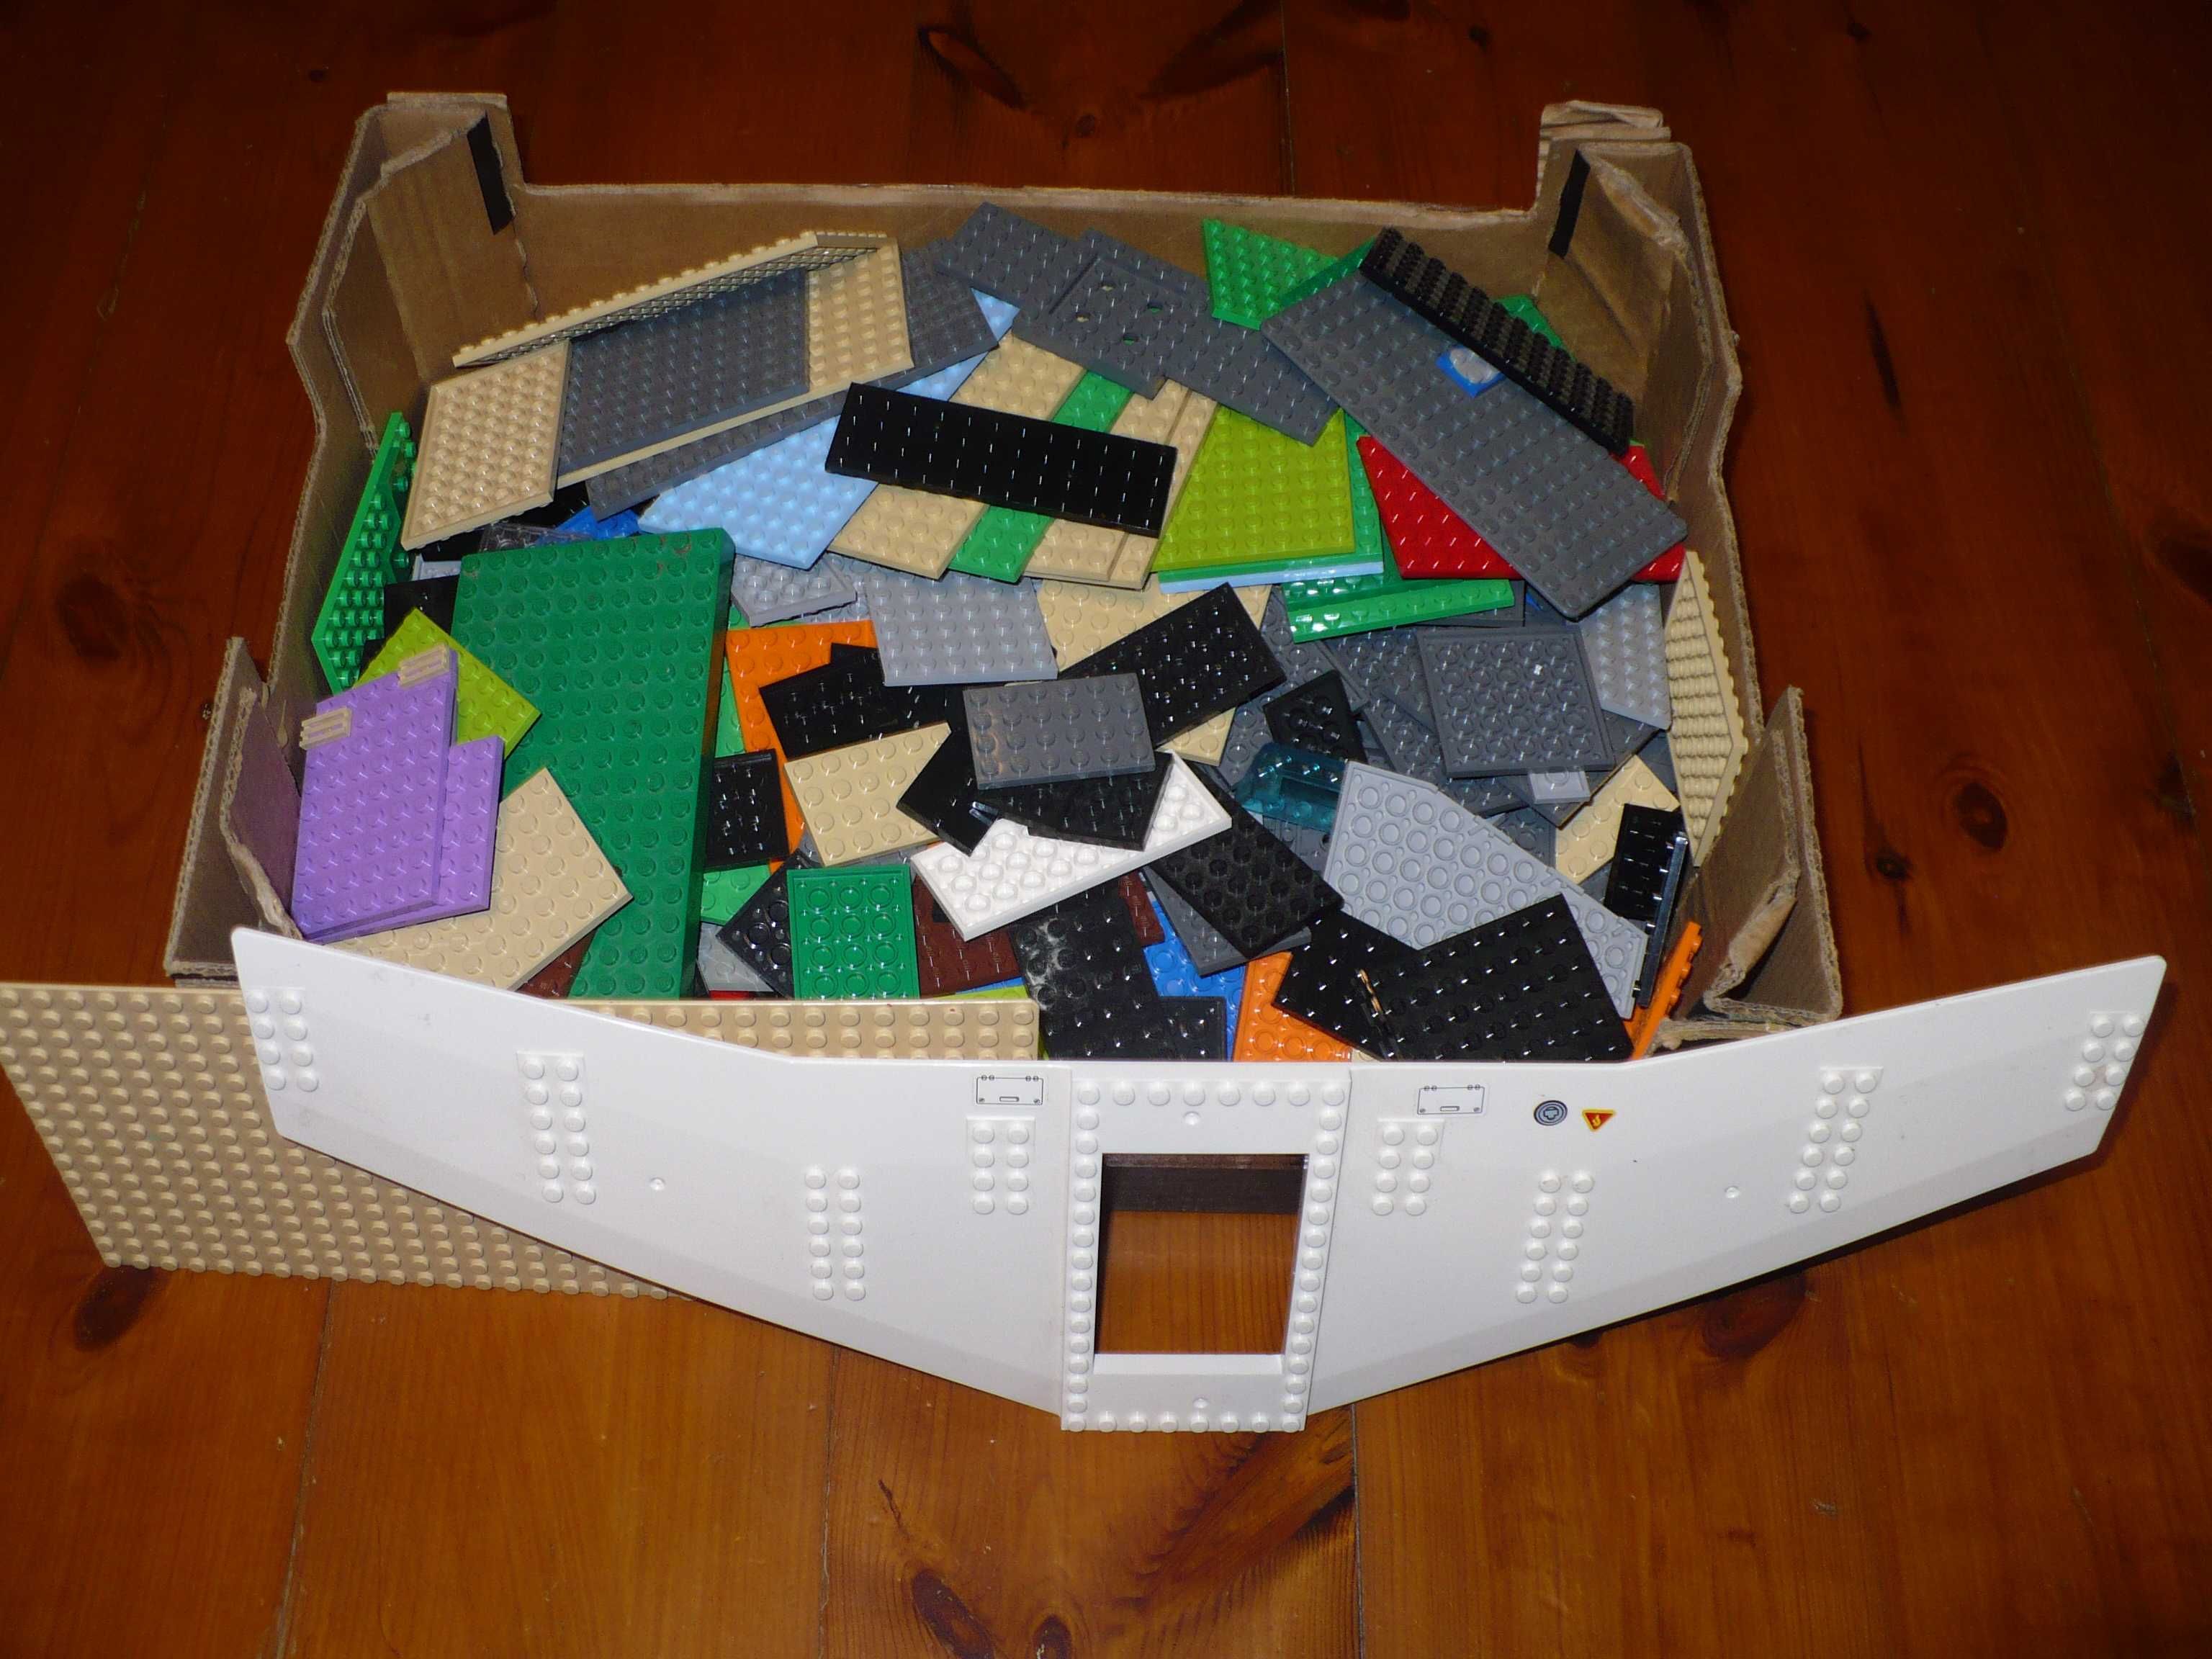 Klocki Lego Mix Płytki Konstrukcyjne 2 kg Zestaw #14 Wyprzedaż OKAZJA!